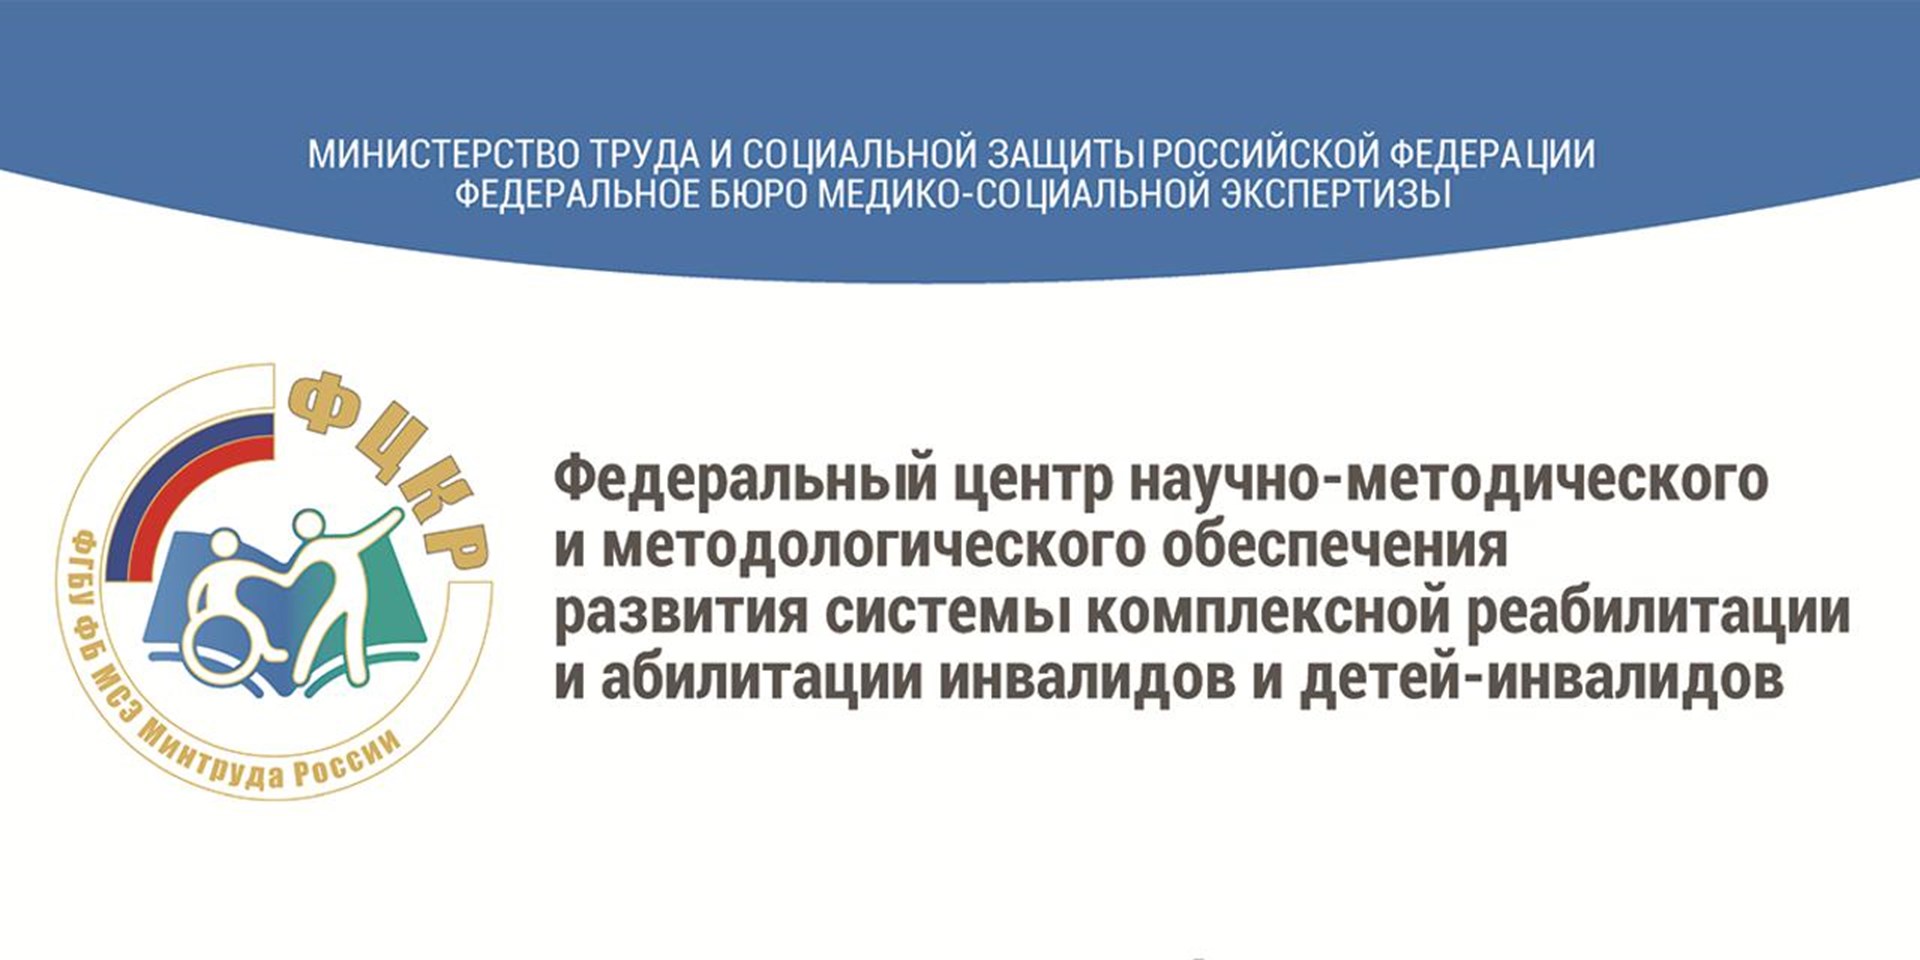 05.05.2021 Москва. 7 мая 2021 в 12:00 Вебинар: «Правила признания лица инвалидом в 2021 году»